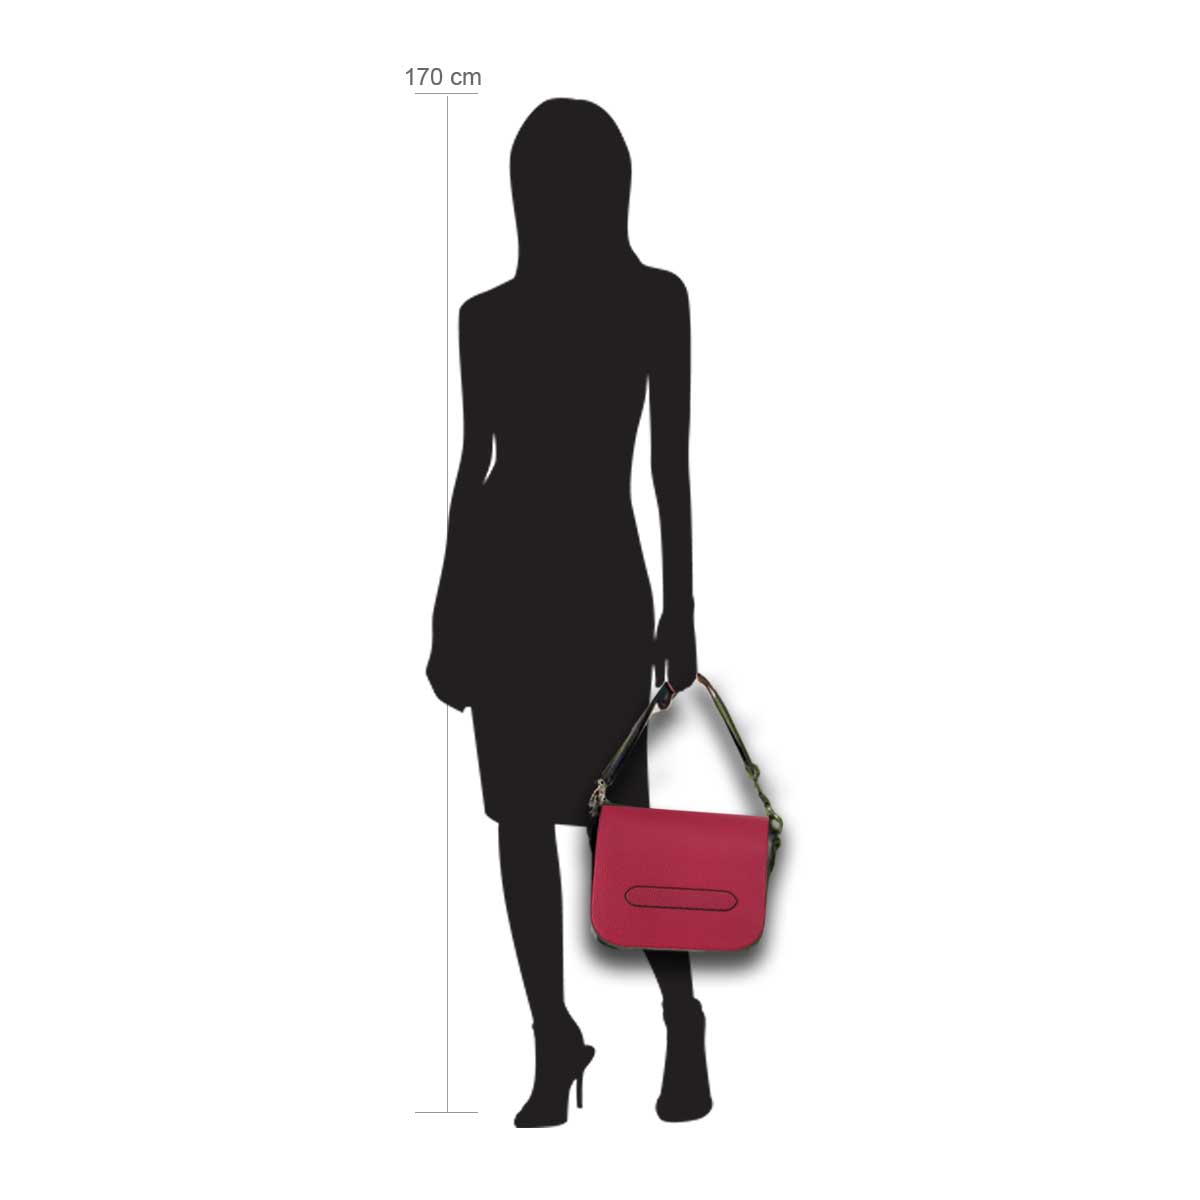 Modellpuppe 170 cm groß zeigt die Handtaschengröße an der Person Modell:Toskana